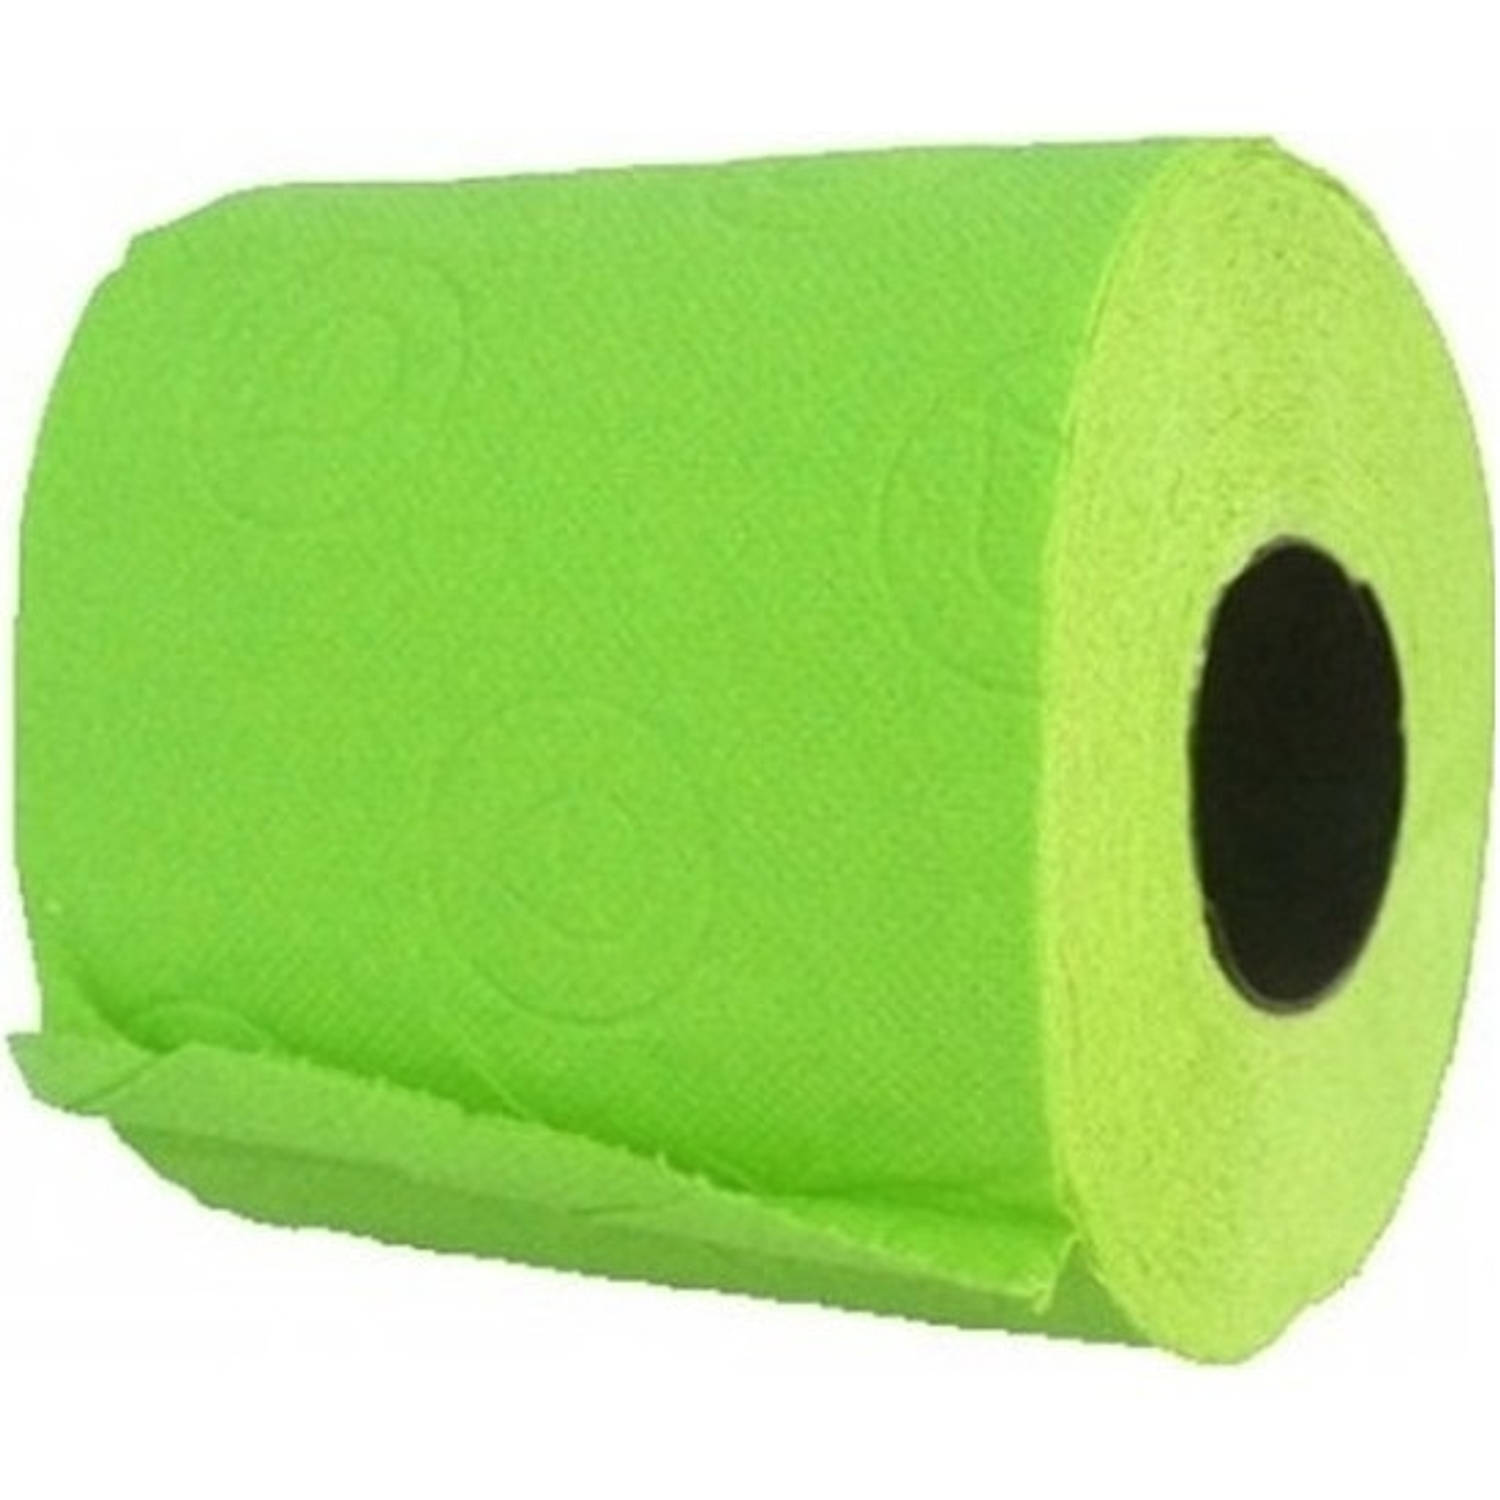 2x Groen toiletpapier rollen 140 vellen Feestdecoratievoorwerp